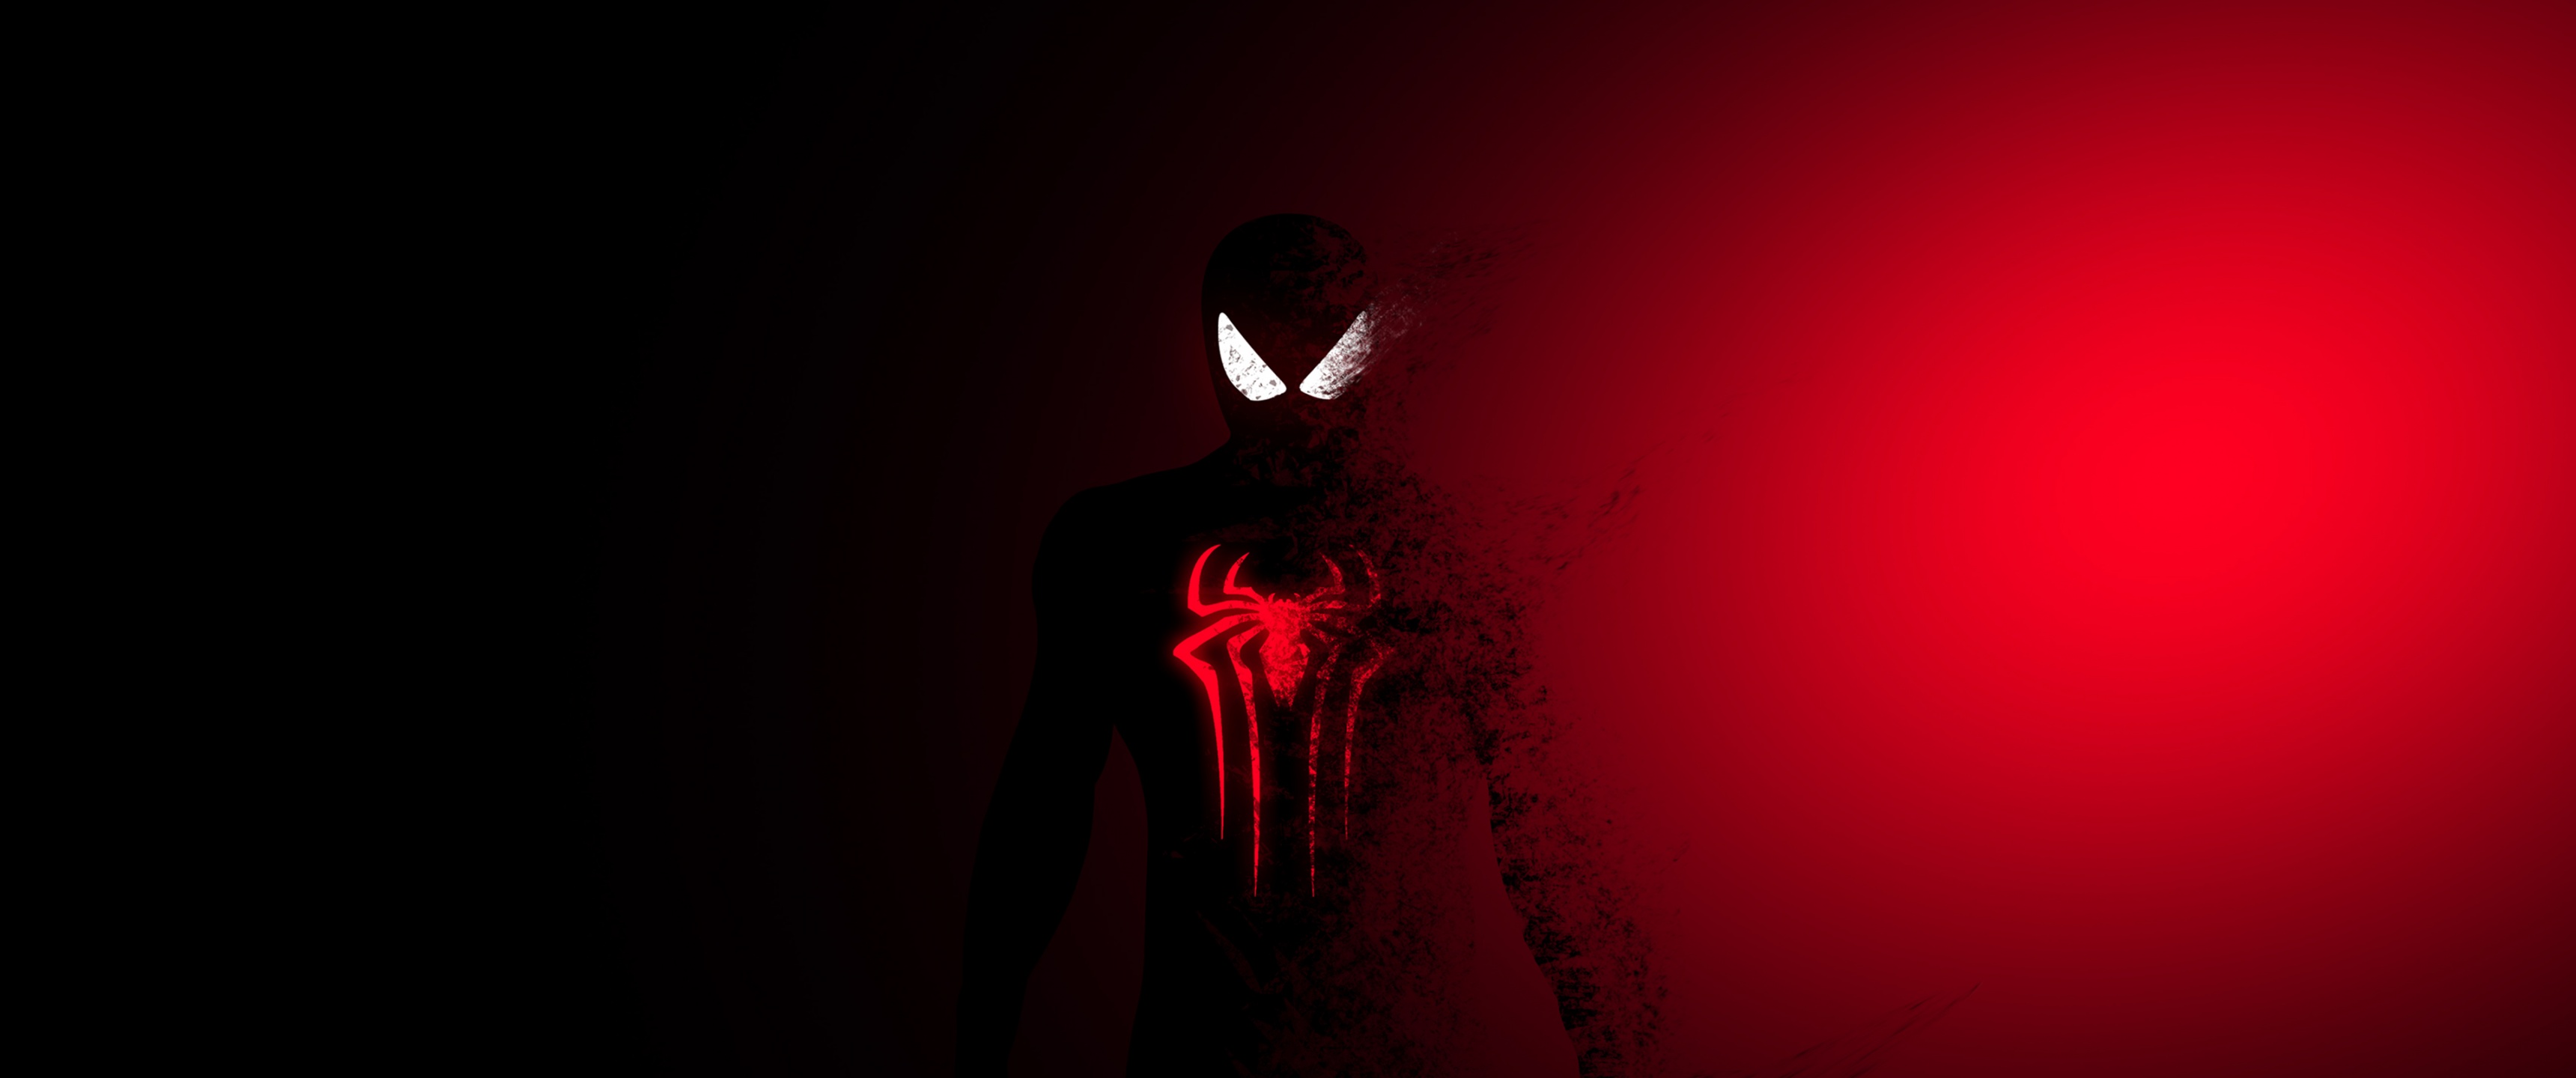 Spider-Man: Dùng sức mạnh điện ảnh để tìm hiểu về câu chuyện phiêu lưu hấp dẫn của người anh hùng tuyệt vời này. Kho hình ảnh về Spider-Man sẽ đem lại cho bạn những khám phá thú vị về một trong những nhân vật phi hành đoàn phổ biến nhất trong giới truyện tranh và điện ảnh.